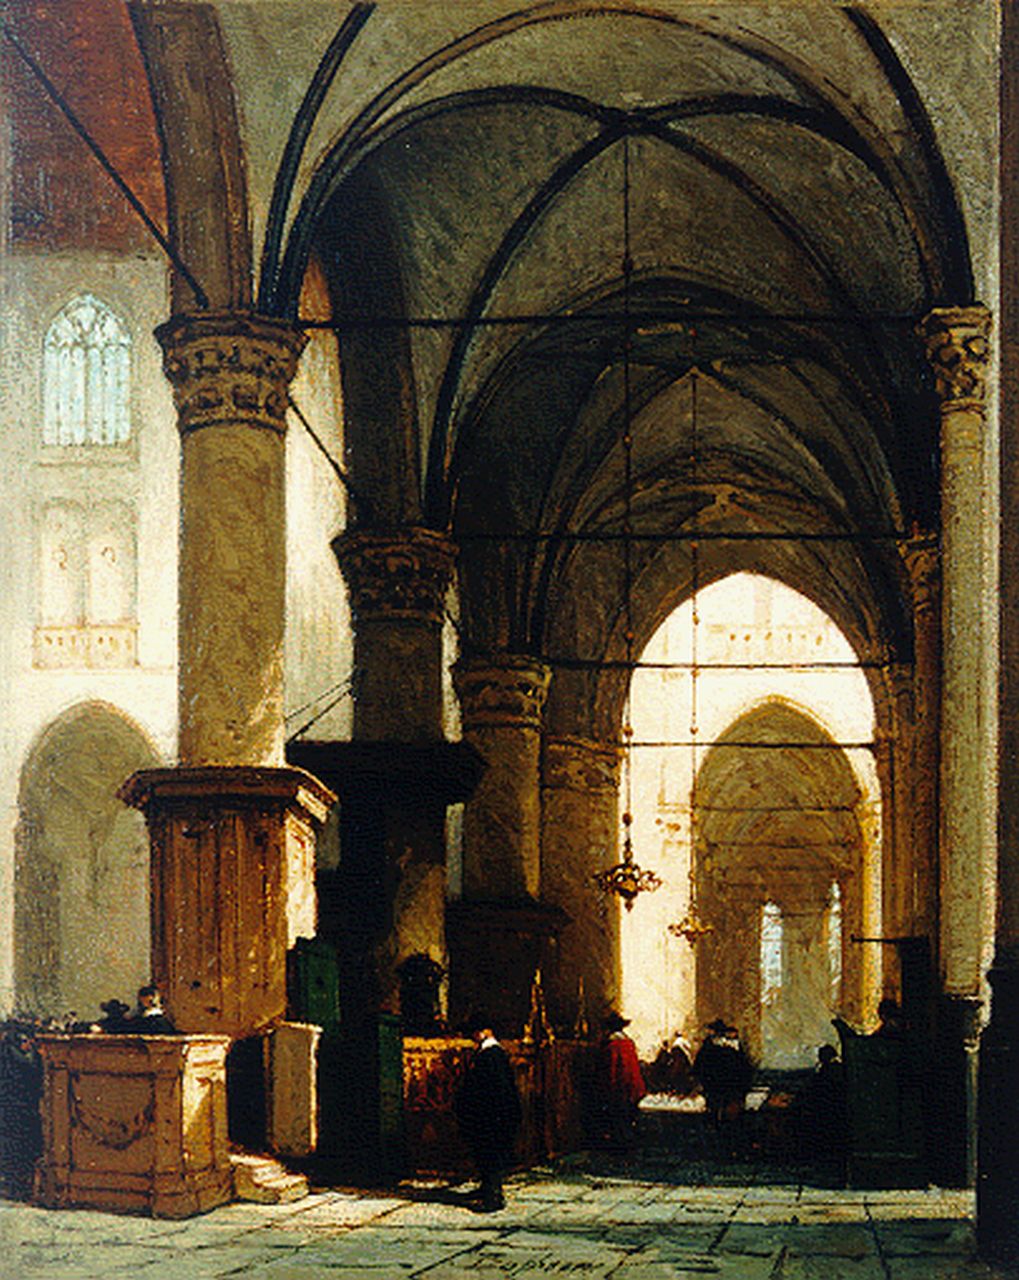 Bosboom J.  | Johannes Bosboom, Interior of the 'Grote of St. Laurenskerk', Alkmaar, Öl auf Holz 34,2 x 27,7 cm, signed l.c. und painted between 1865-1870